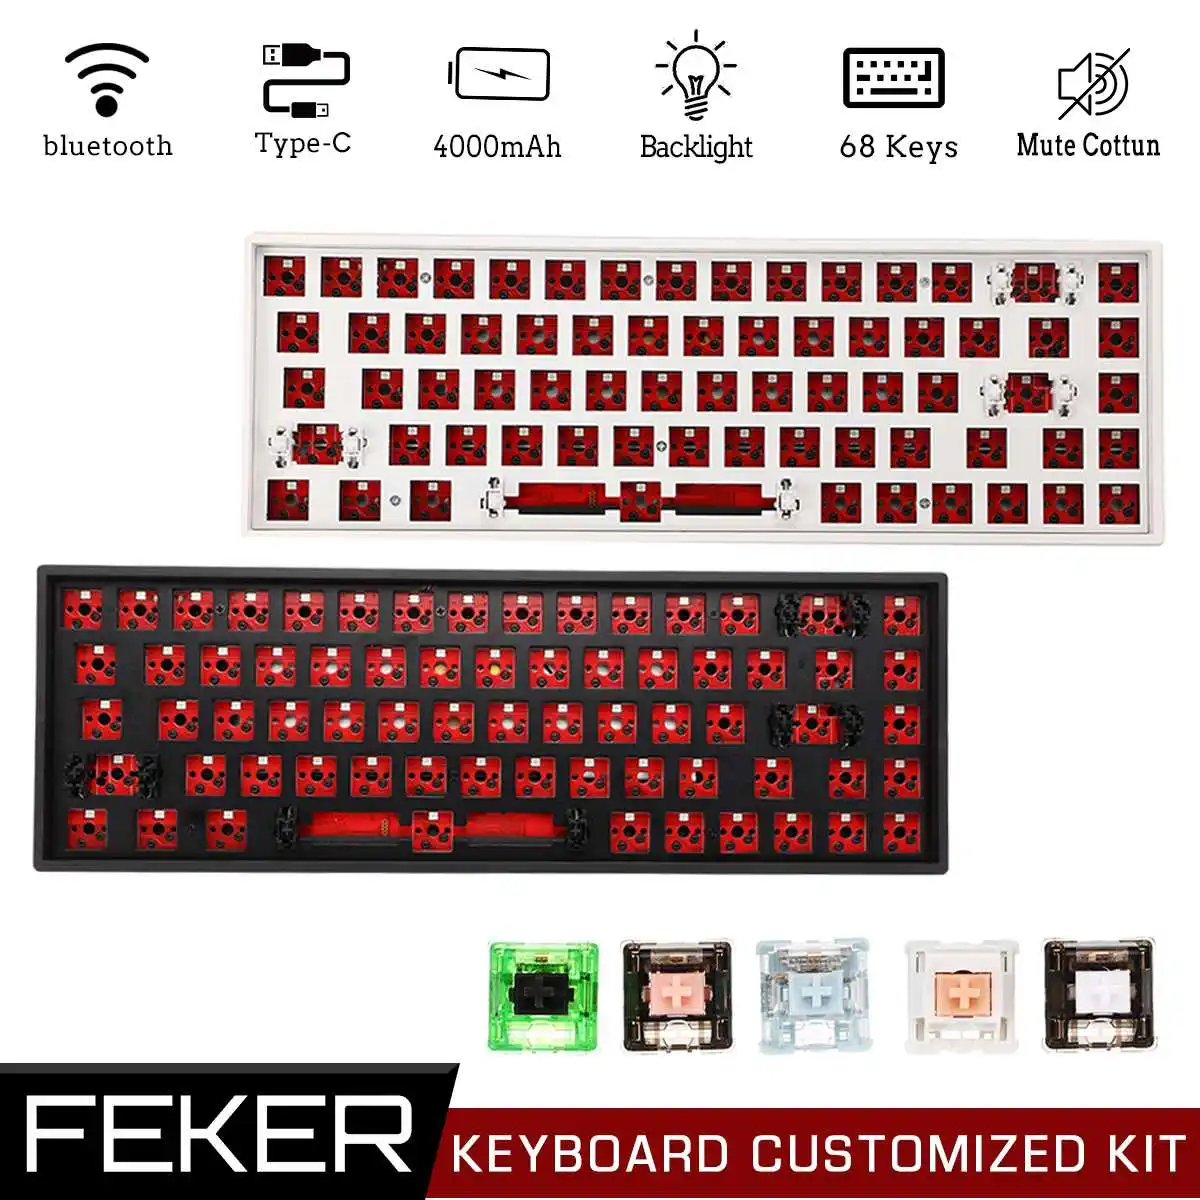 

FEKER 68 Keys Hotswap DIY Keyboard Customized Kit Triple Mode bluetooth 2.4Ghz NKRO Backlit Mute Cotton Mechanical Keyboard Kit